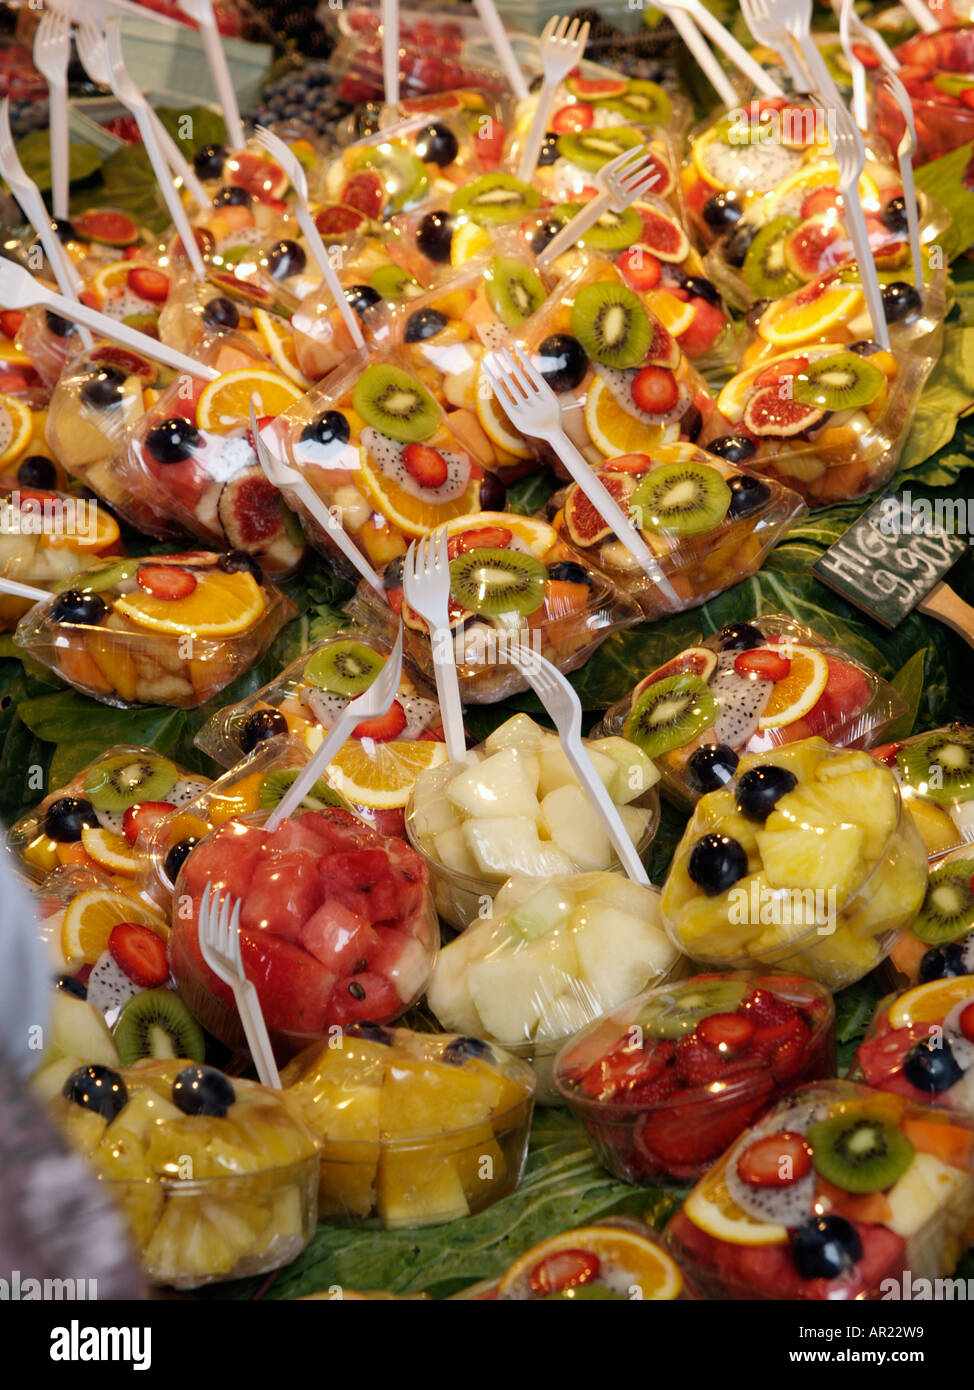 Fresh cut fruit display at the Mercat de la Boqueria Barcelona Stock Photo